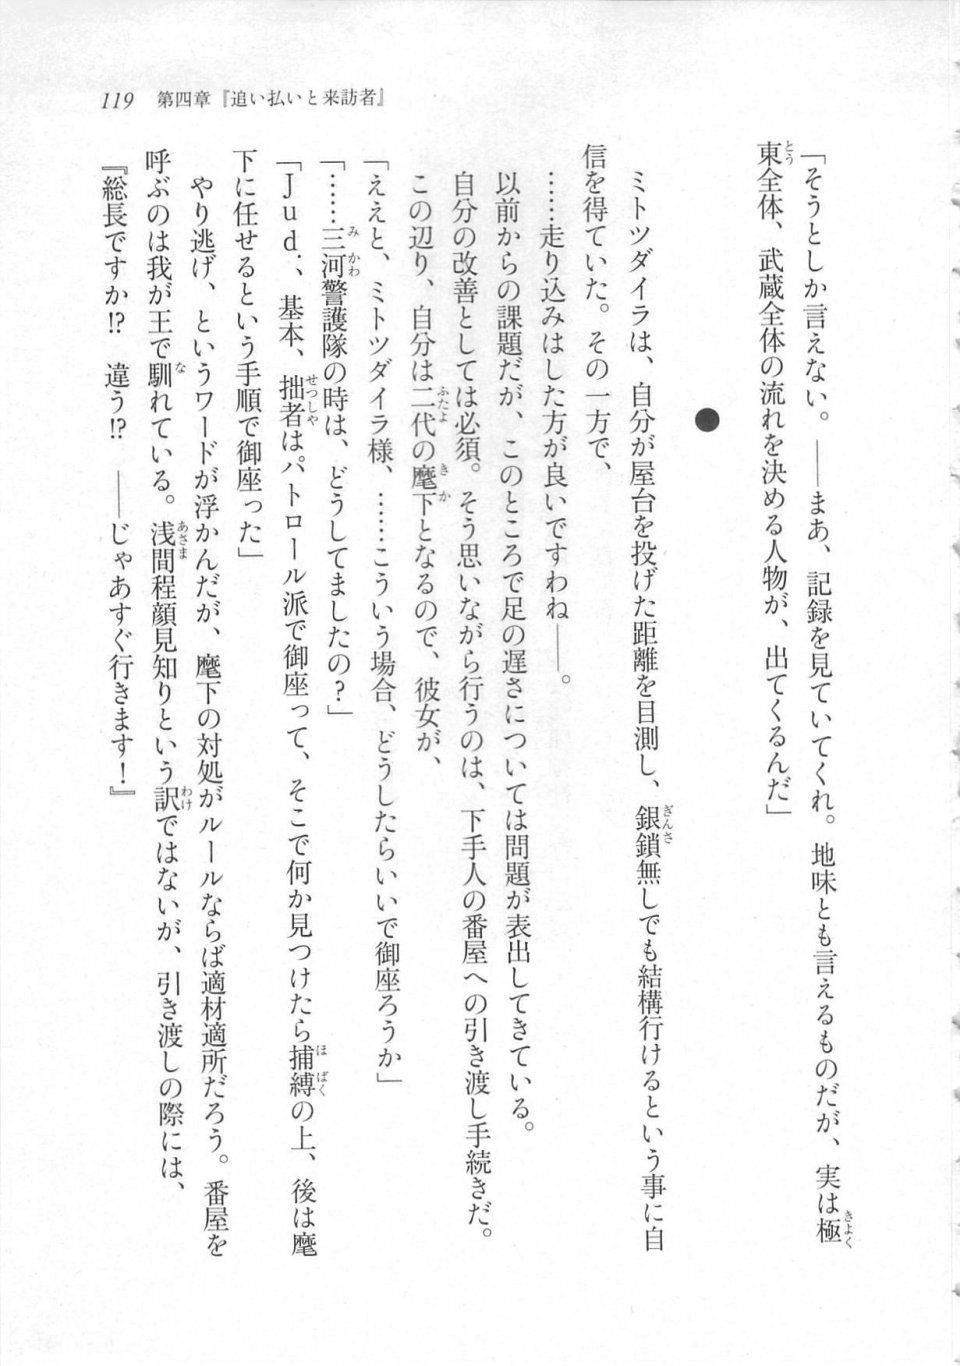 Kyoukai Senjou no Horizon LN Sidestory Vol 3 - Photo #123